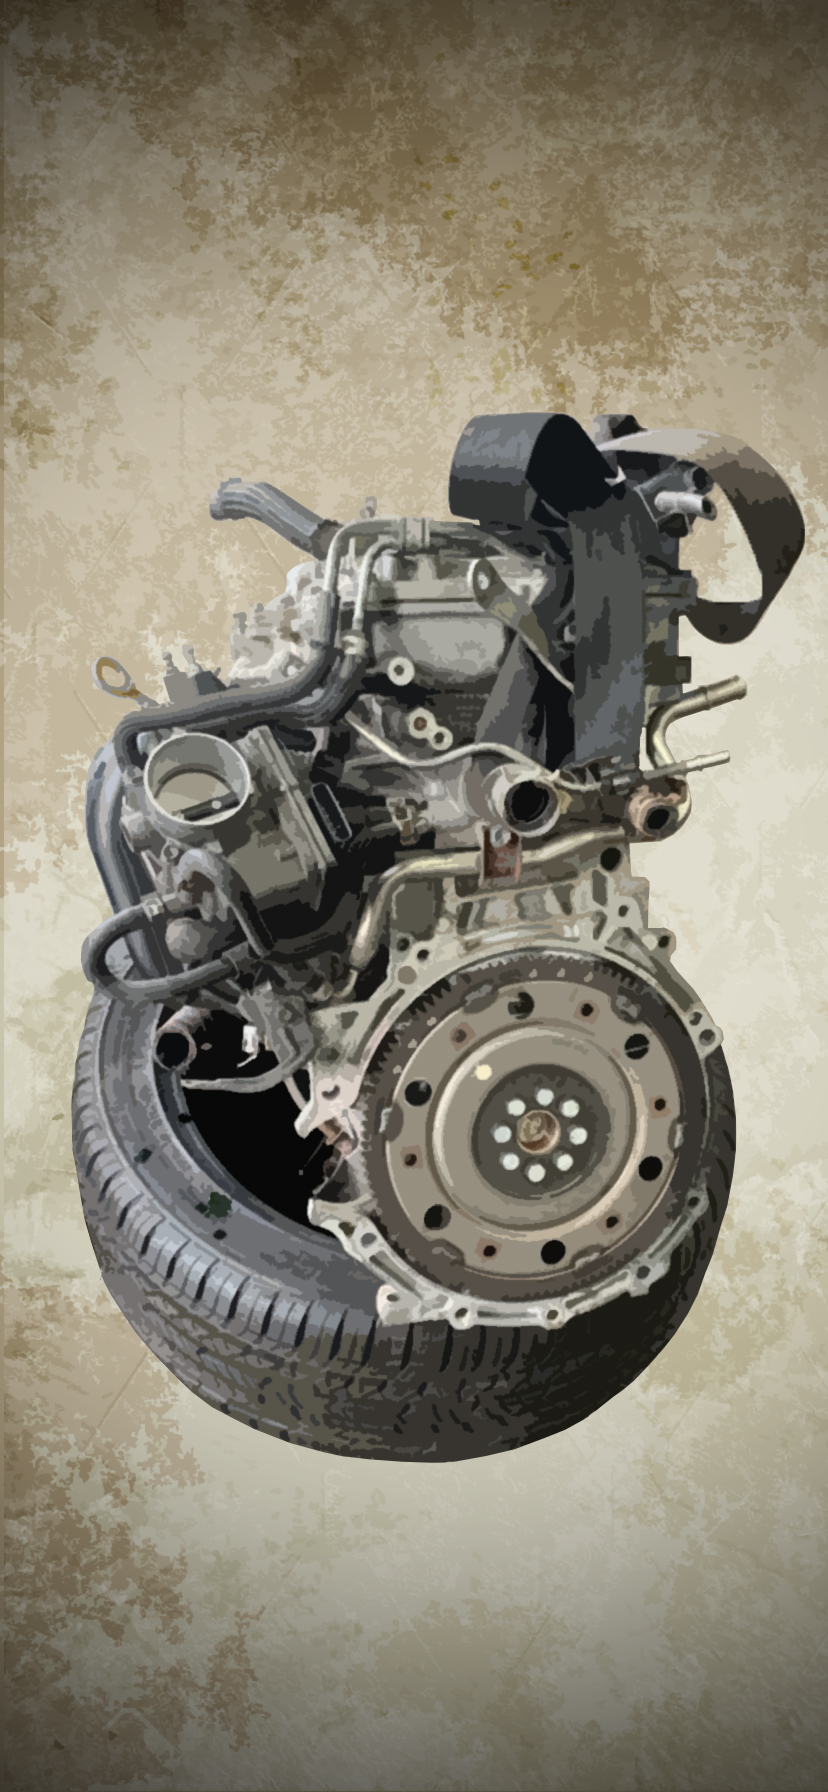 Car Engine IPhone Wallpaper by Mazaroh on DeviantArt